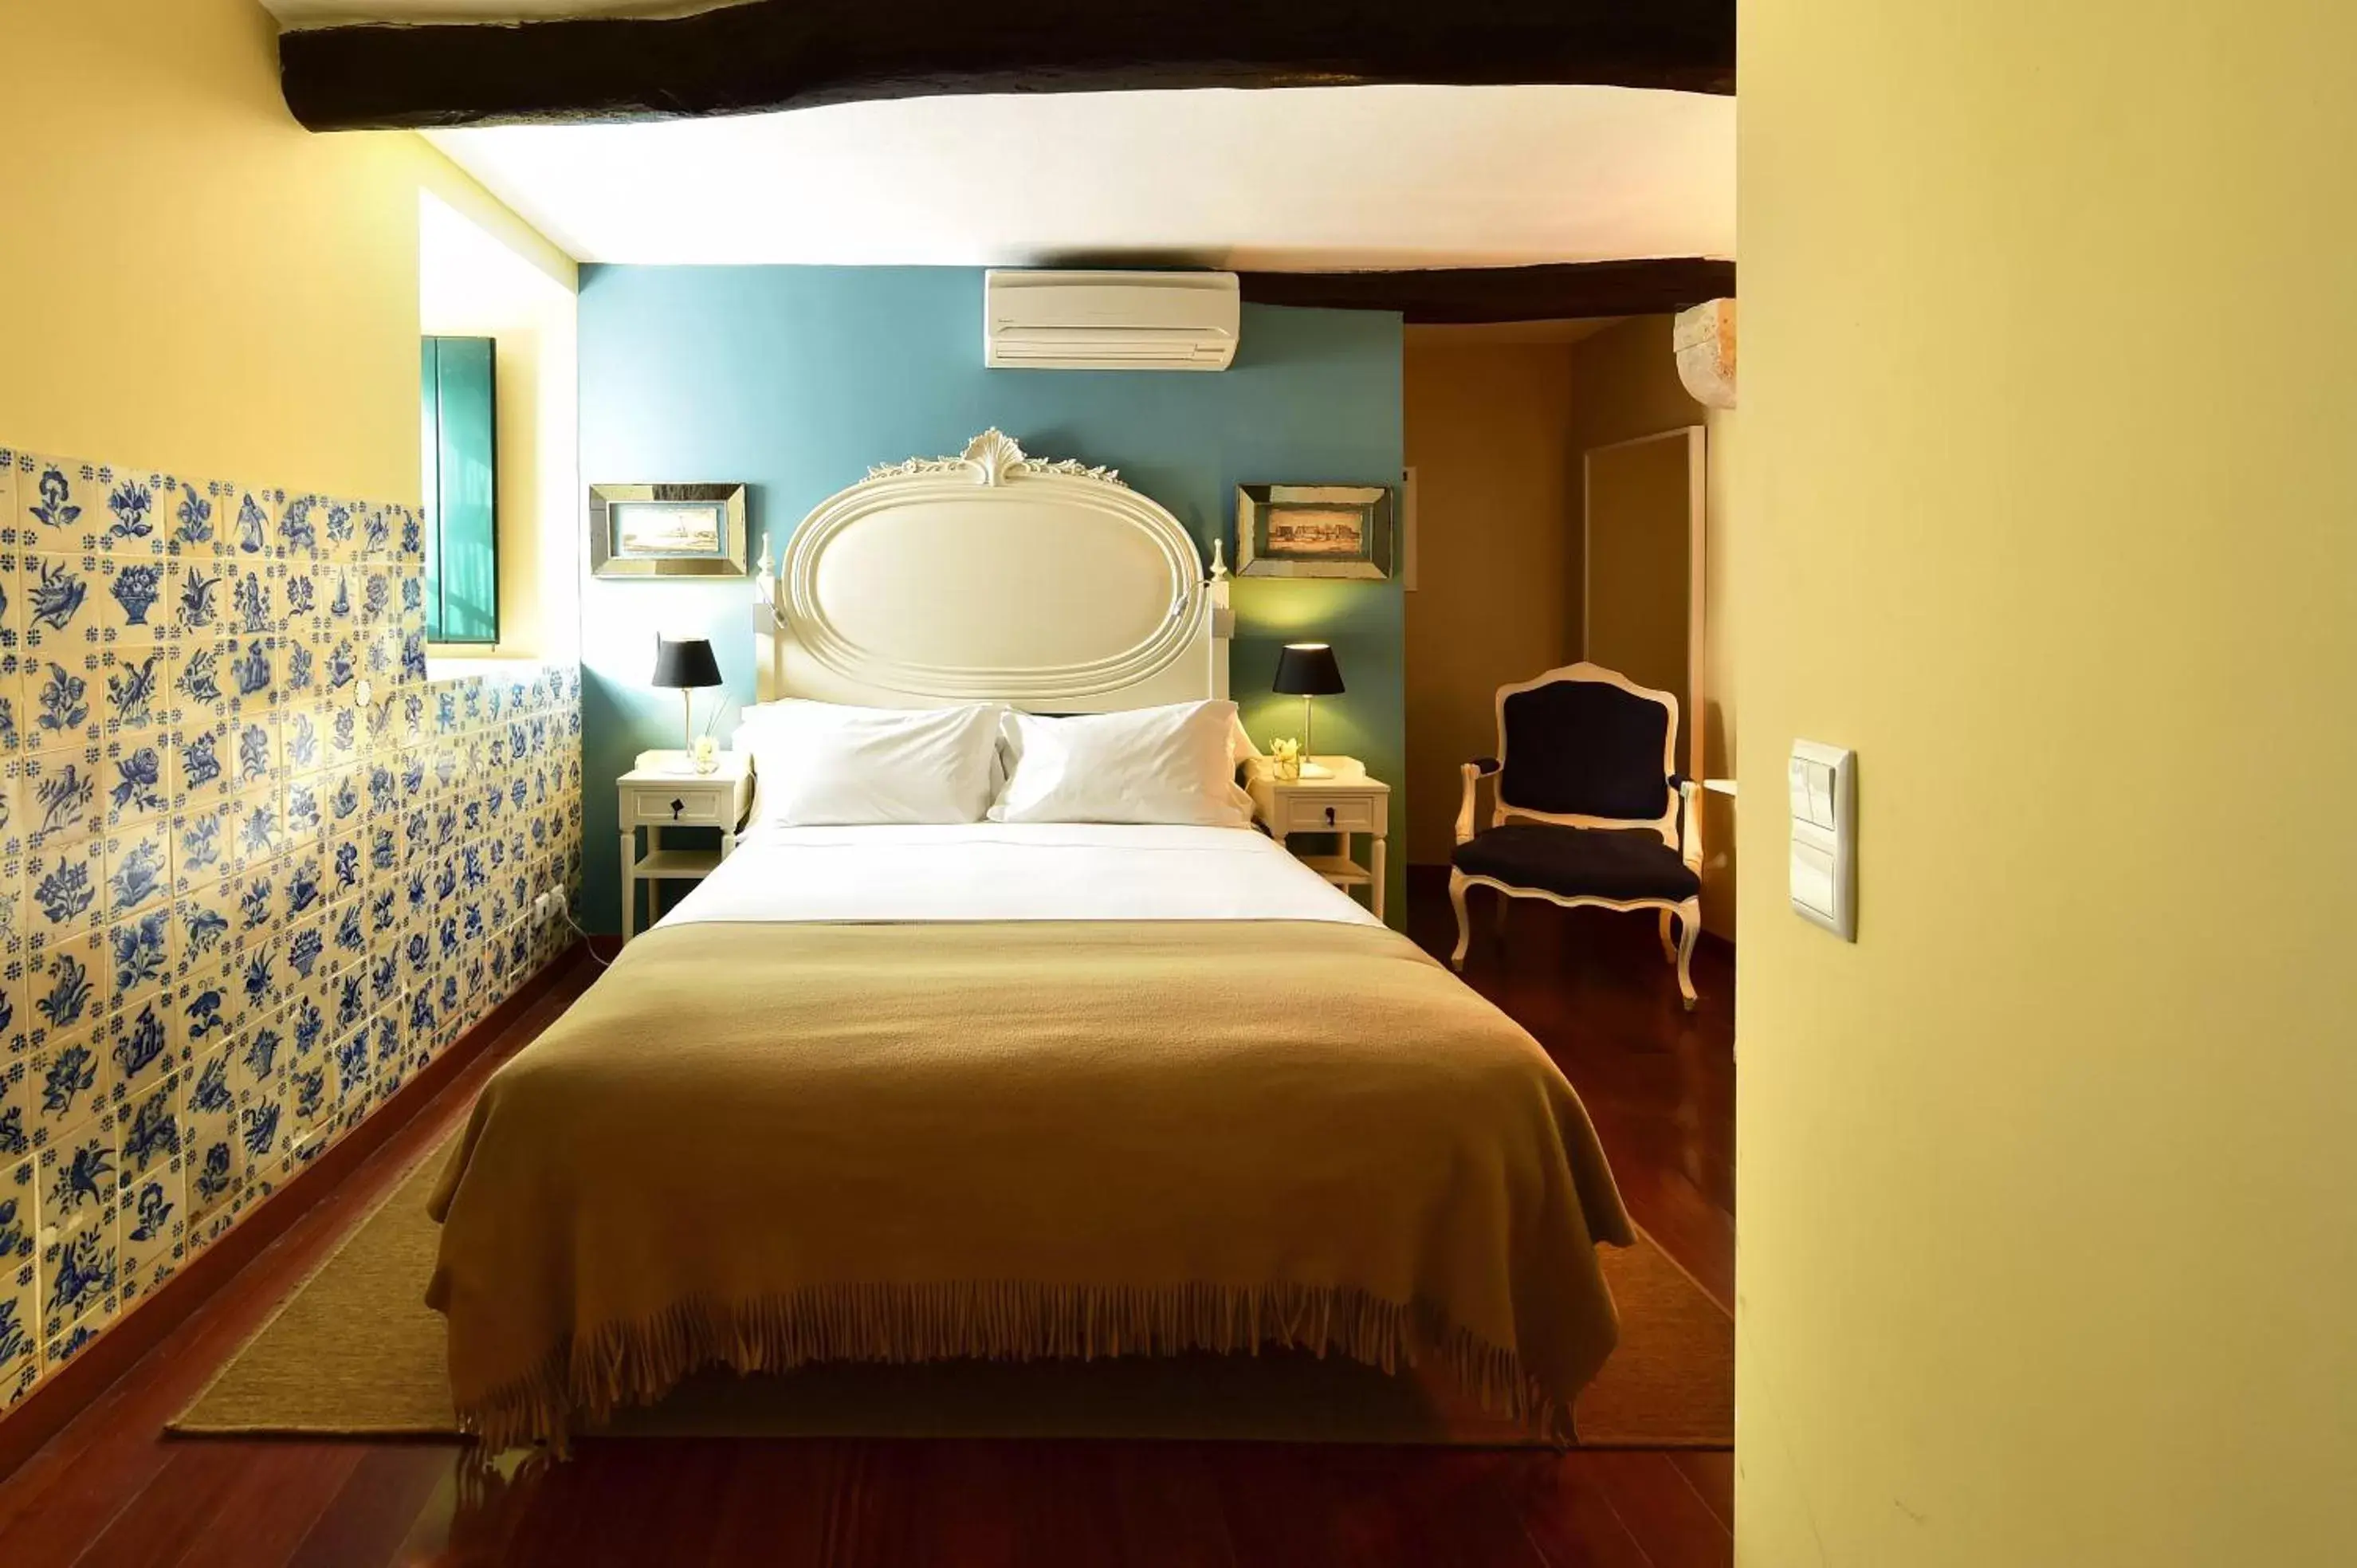 Bed, Room Photo in Pousada Castelo de Obidos